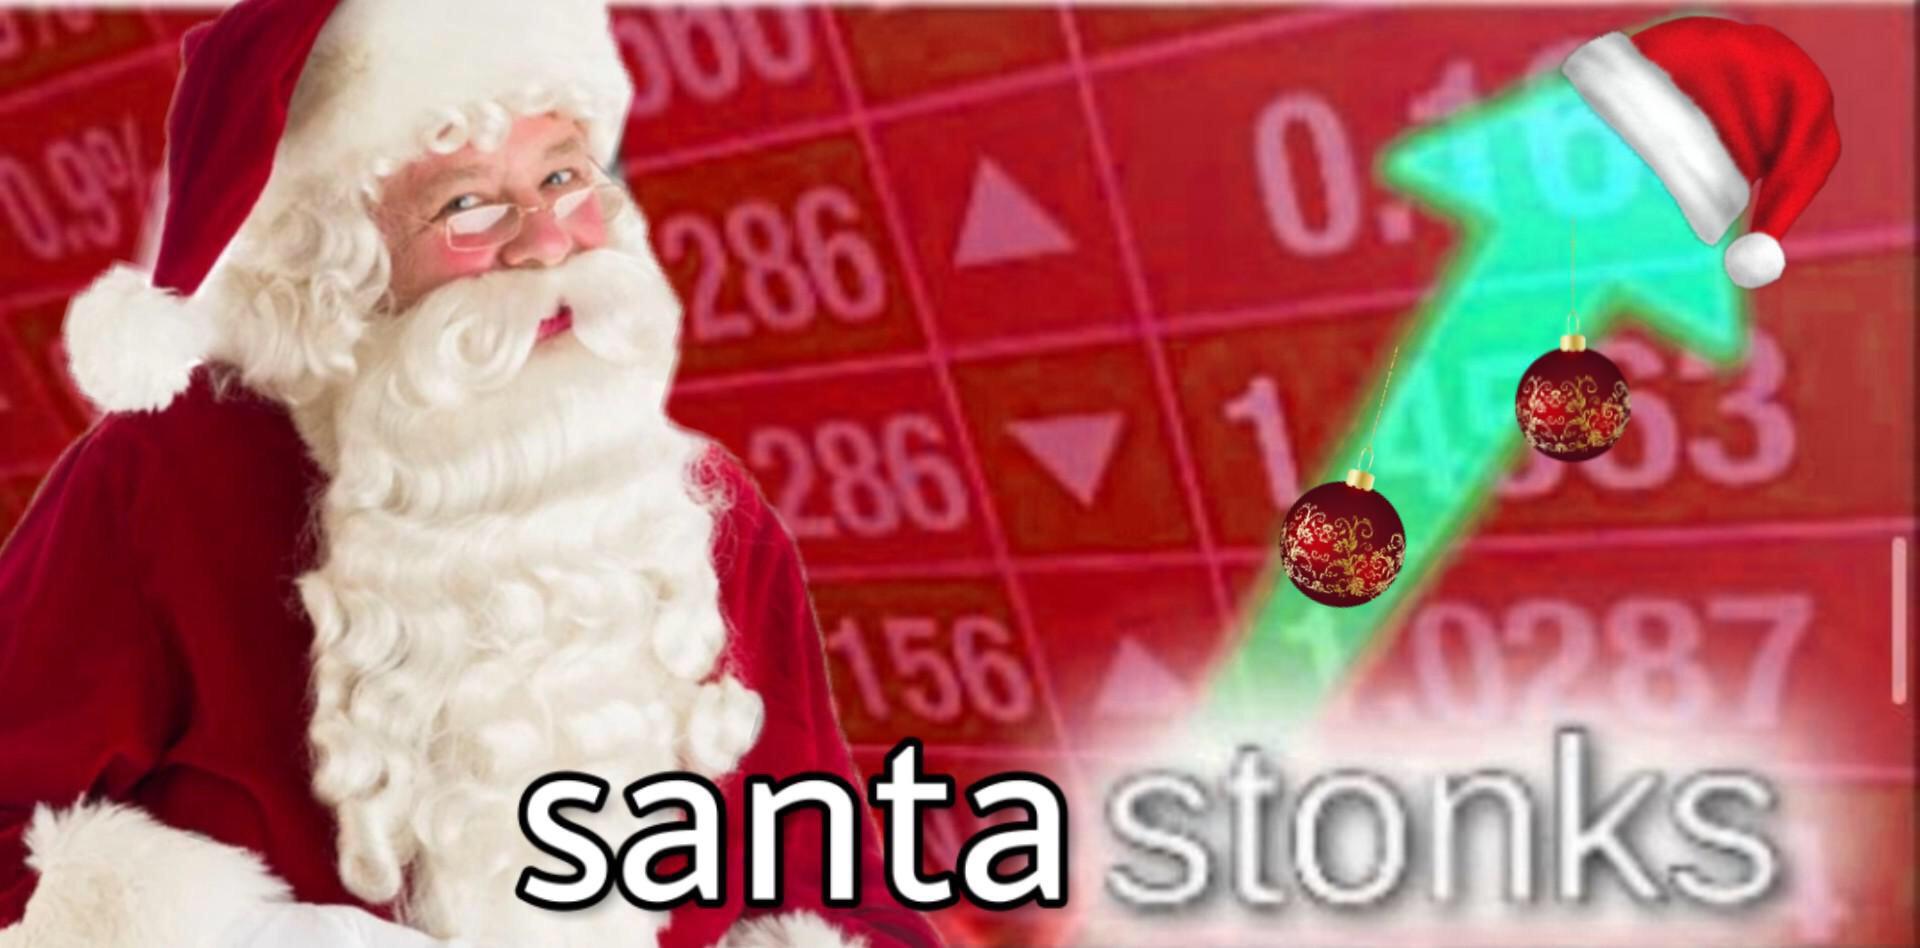 Św. Mikołaj z napisam 'Santa Stonks' na tle tablicy ze zmianami cen aktywów